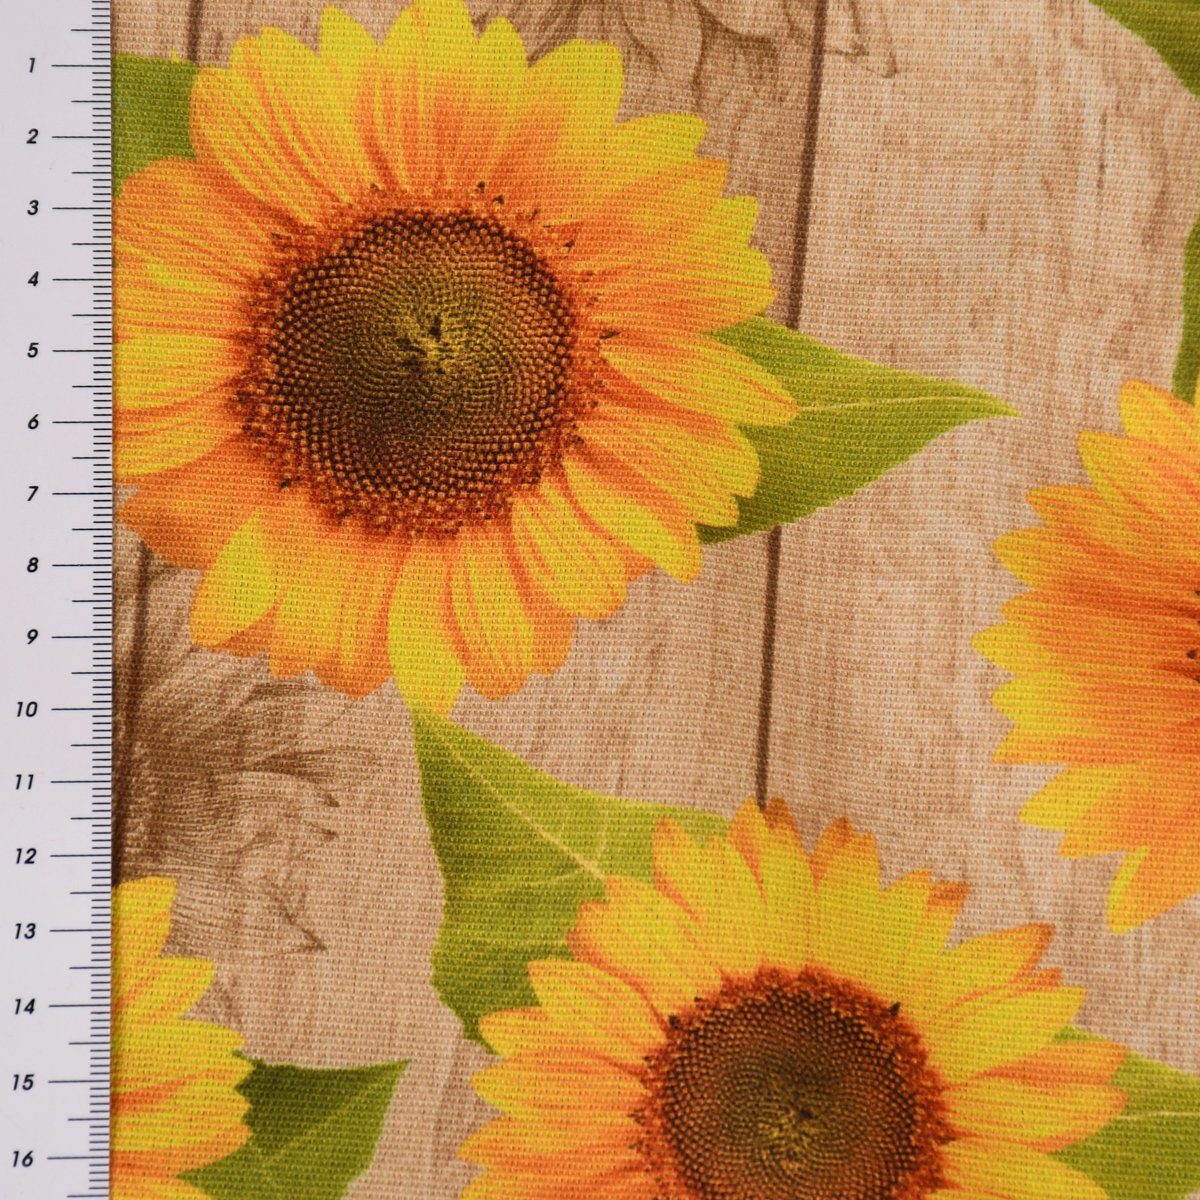 SCHÖNER LEBEN. Dekokissen SCHÖNER Sonnenblumen Holzlatten LEBEN. Outdoor Kissenhülle Sunflower